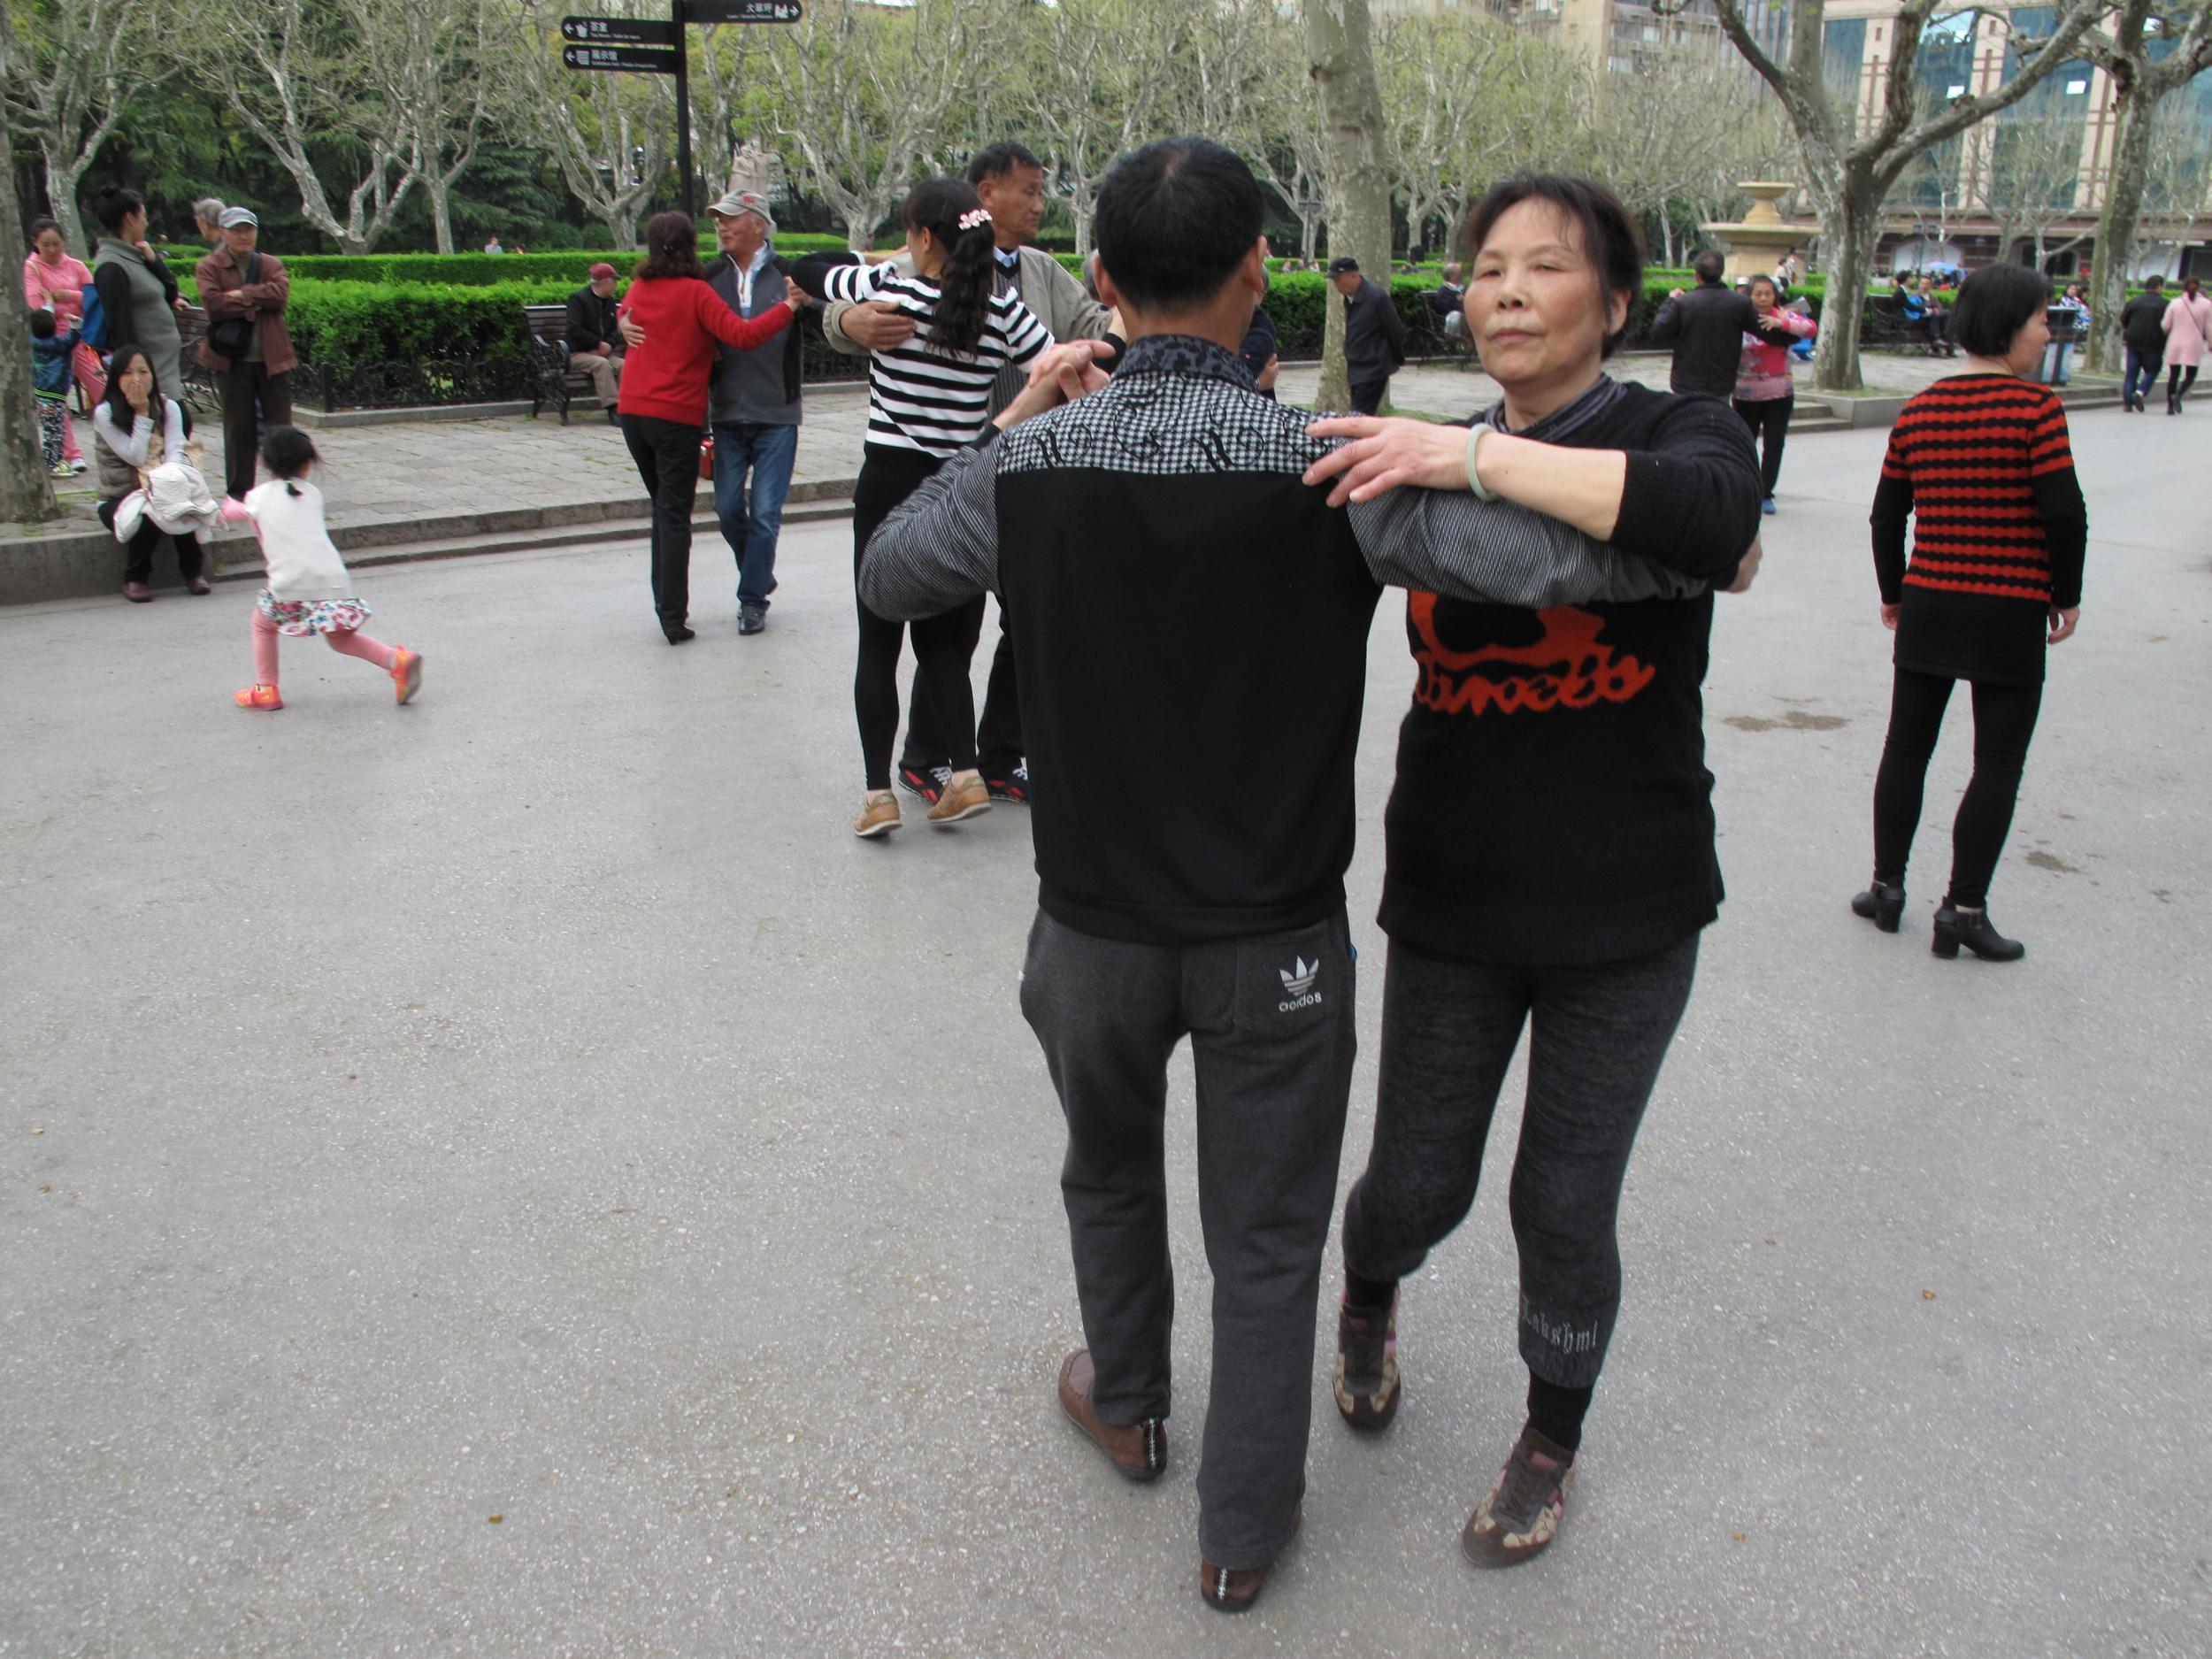 Outdoor ballroom dancing in Fuxing Park